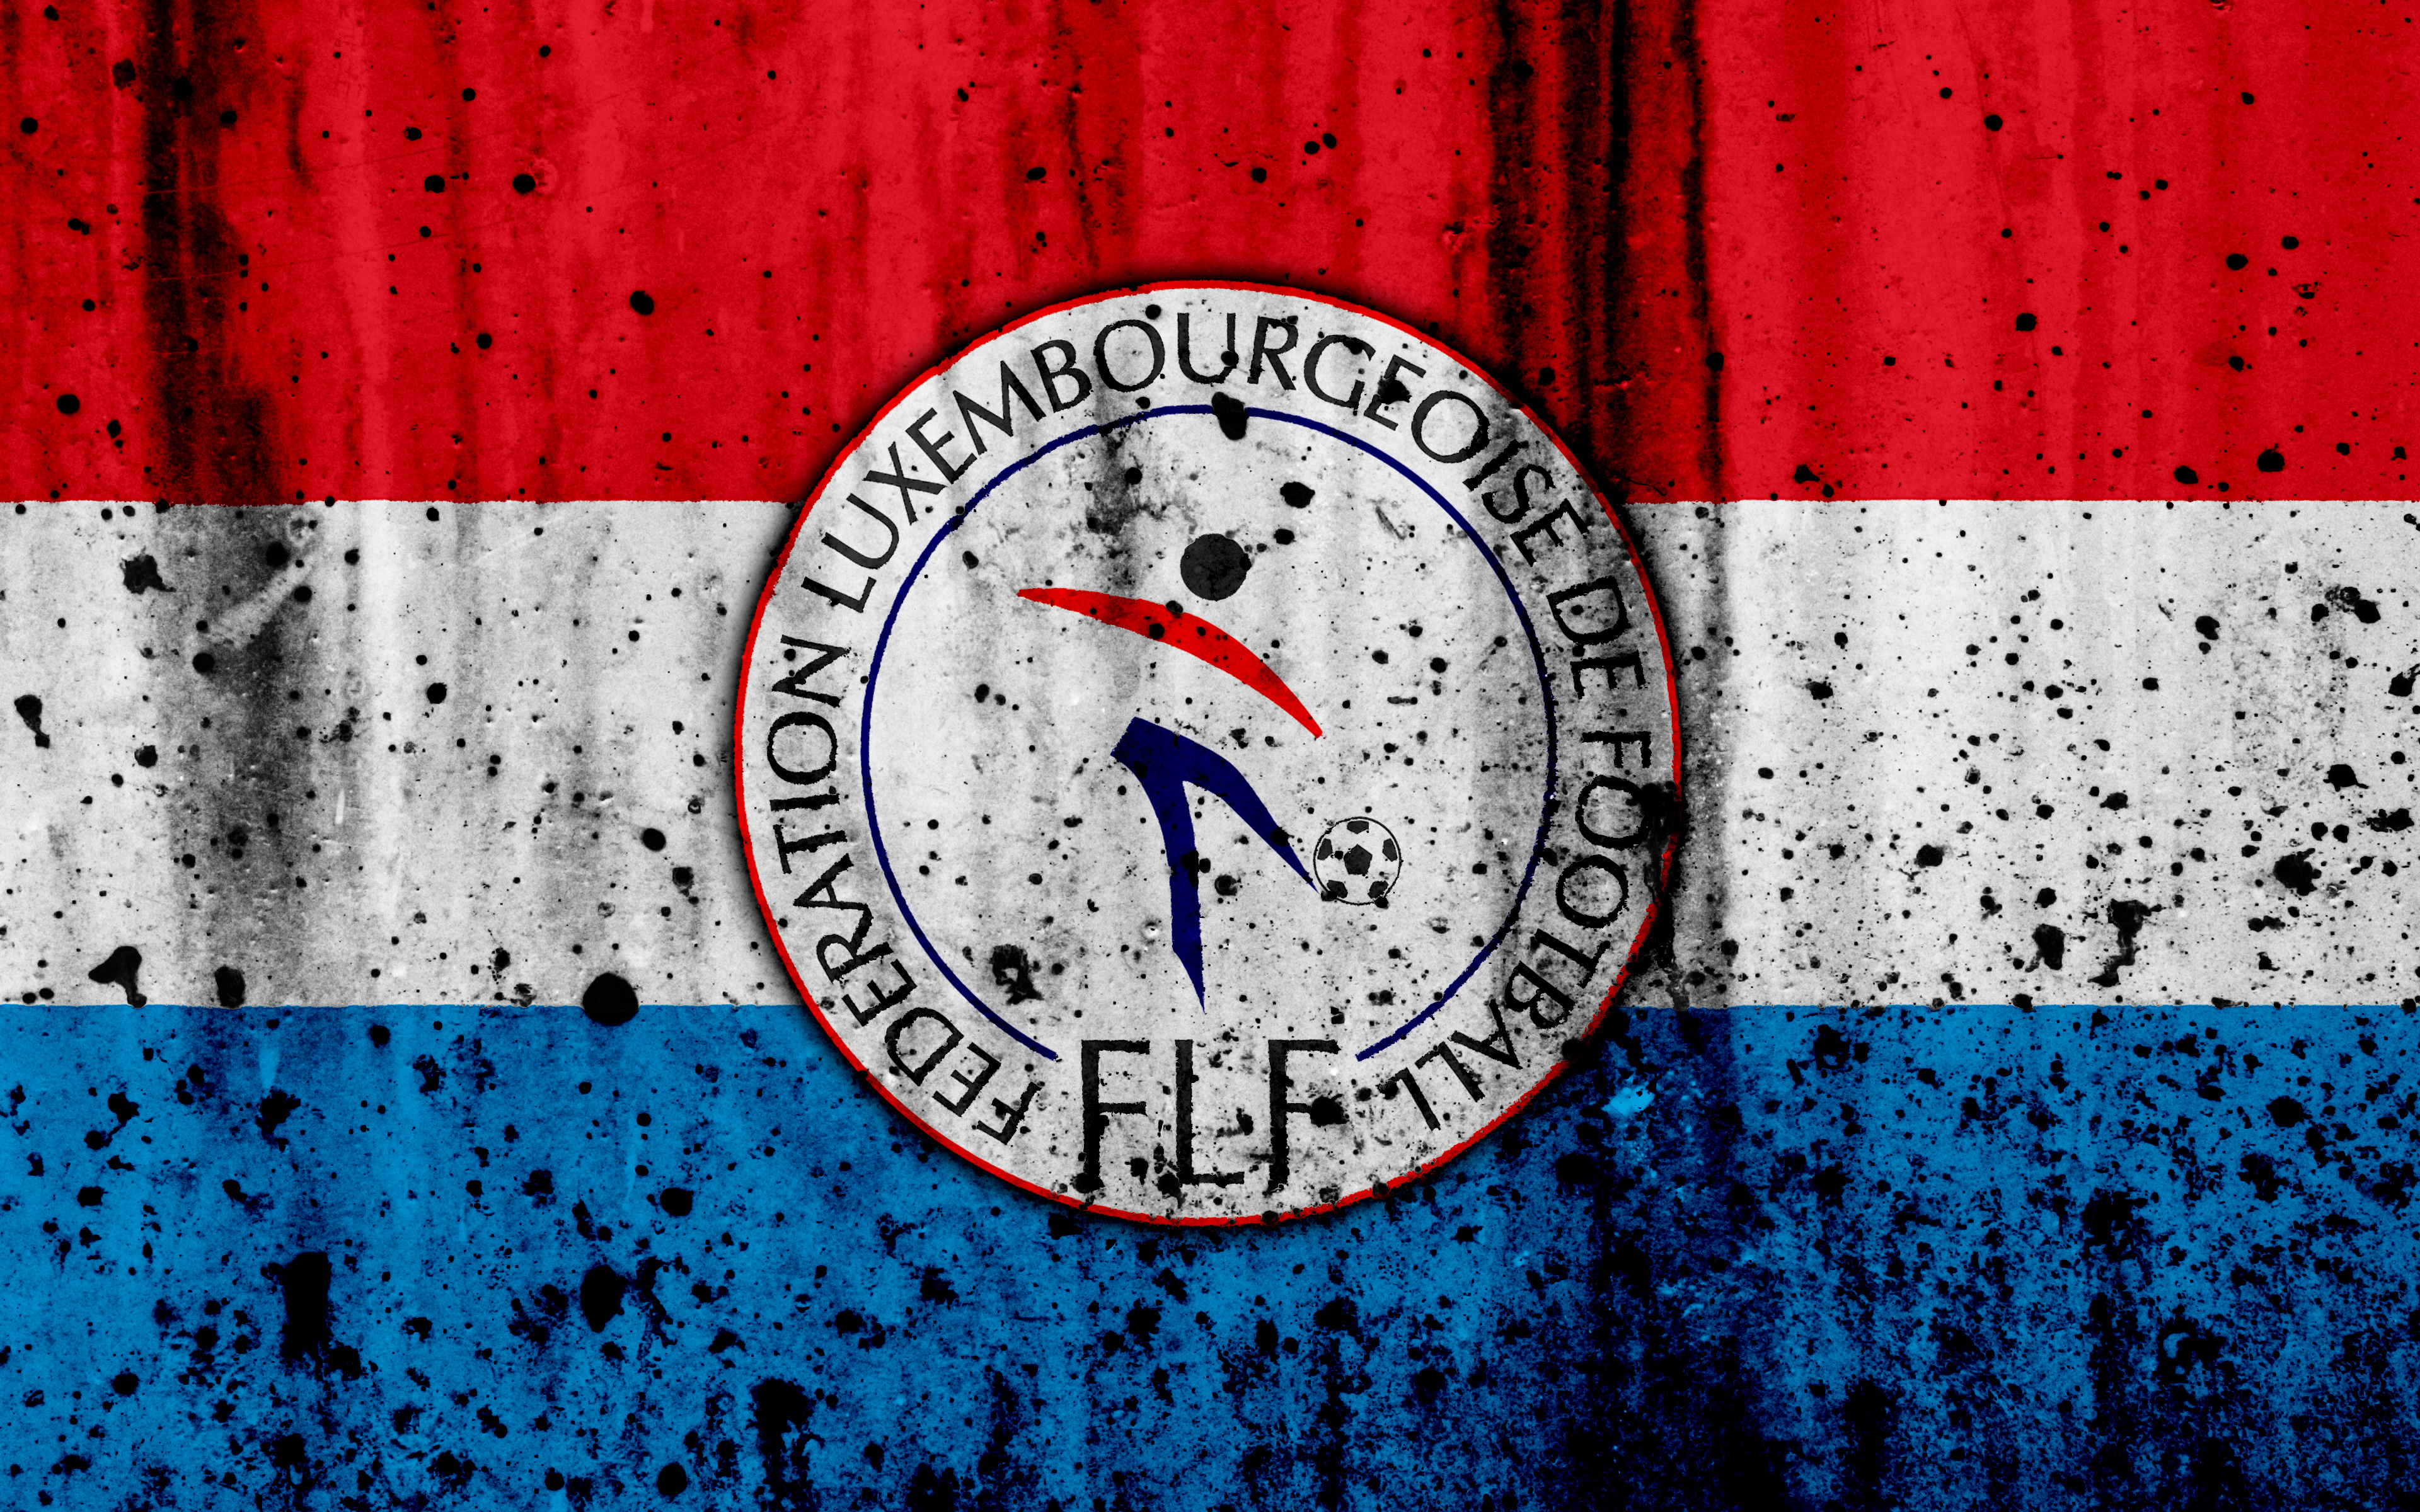 Скачать обои Сборная Люксембурга По Футболу на телефон бесплатно